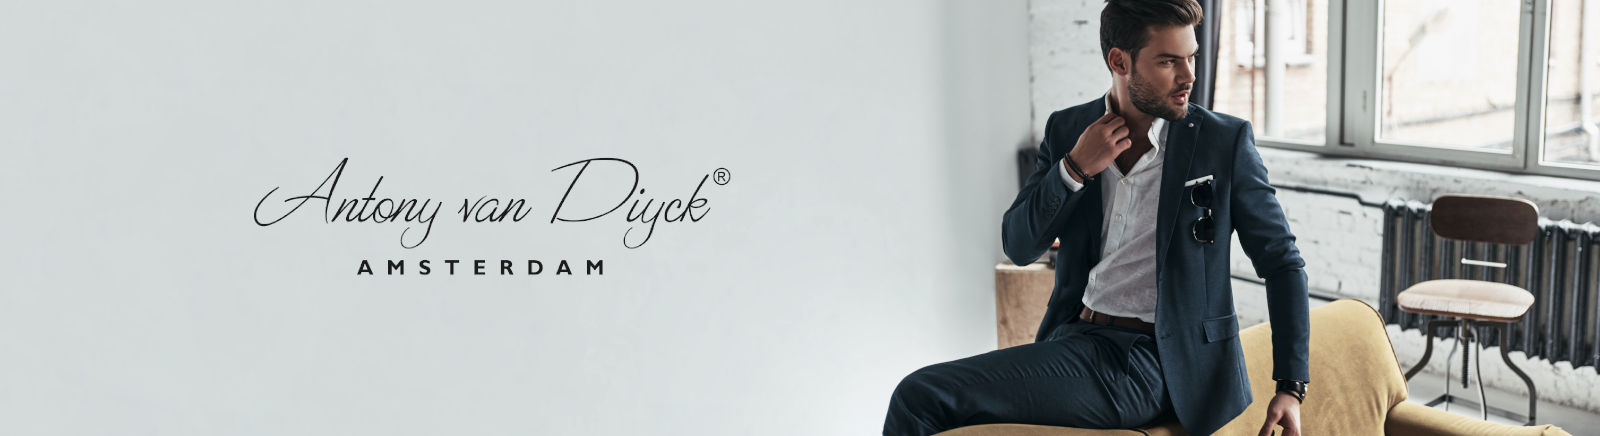 Antony van Diyck Schuhe für Damen online kaufen | GISY